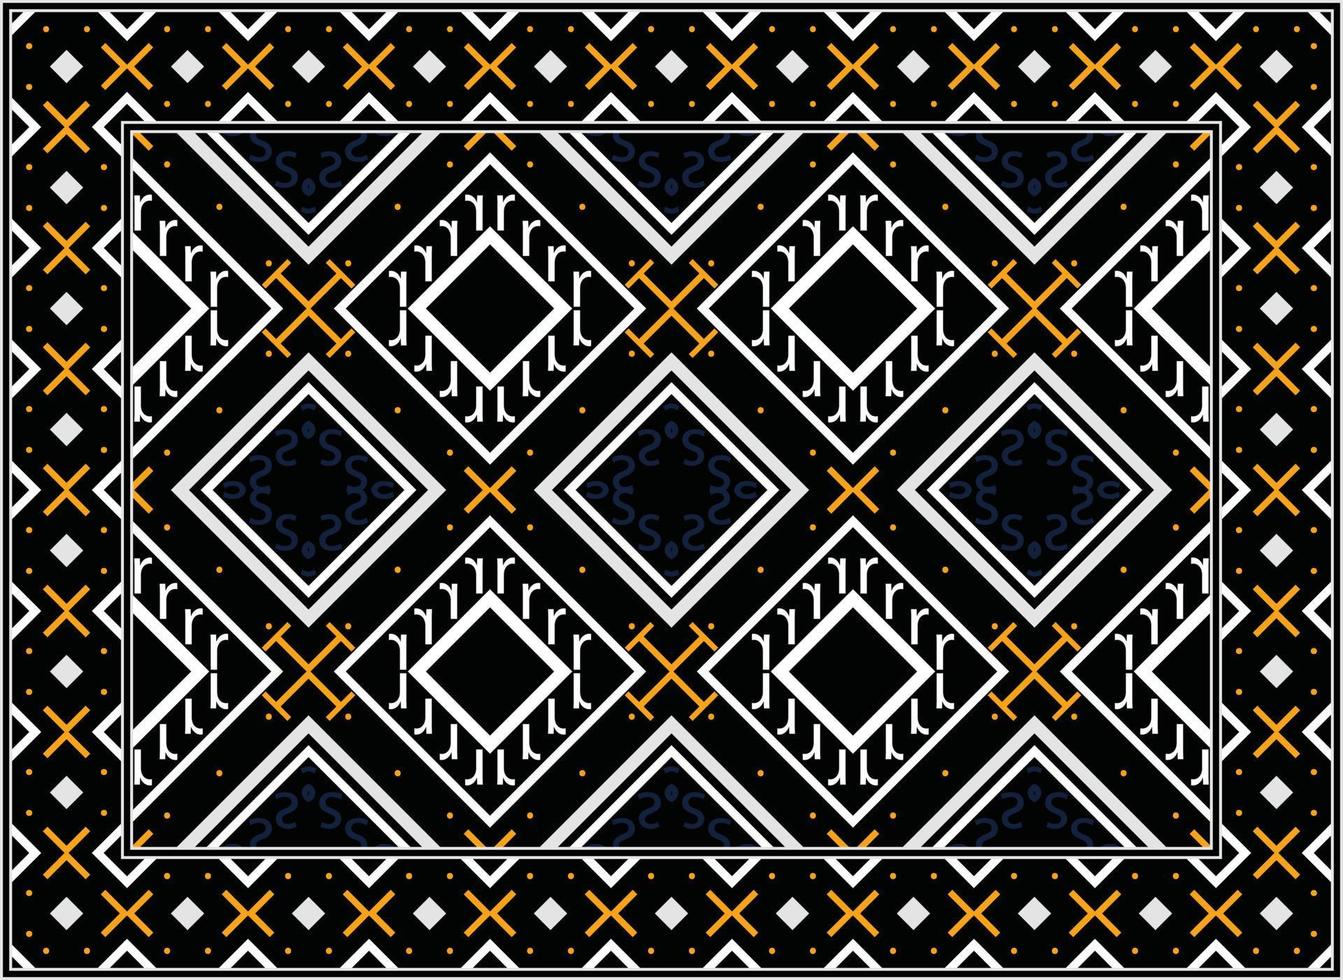 antiek Perzisch tapijt, motief etnisch naadloos patroon modern Perzisch tapijt, Afrikaanse etnisch aztec stijl ontwerp voor afdrukken kleding stof tapijten, handdoeken, zakdoeken, sjaals tapijt, vector